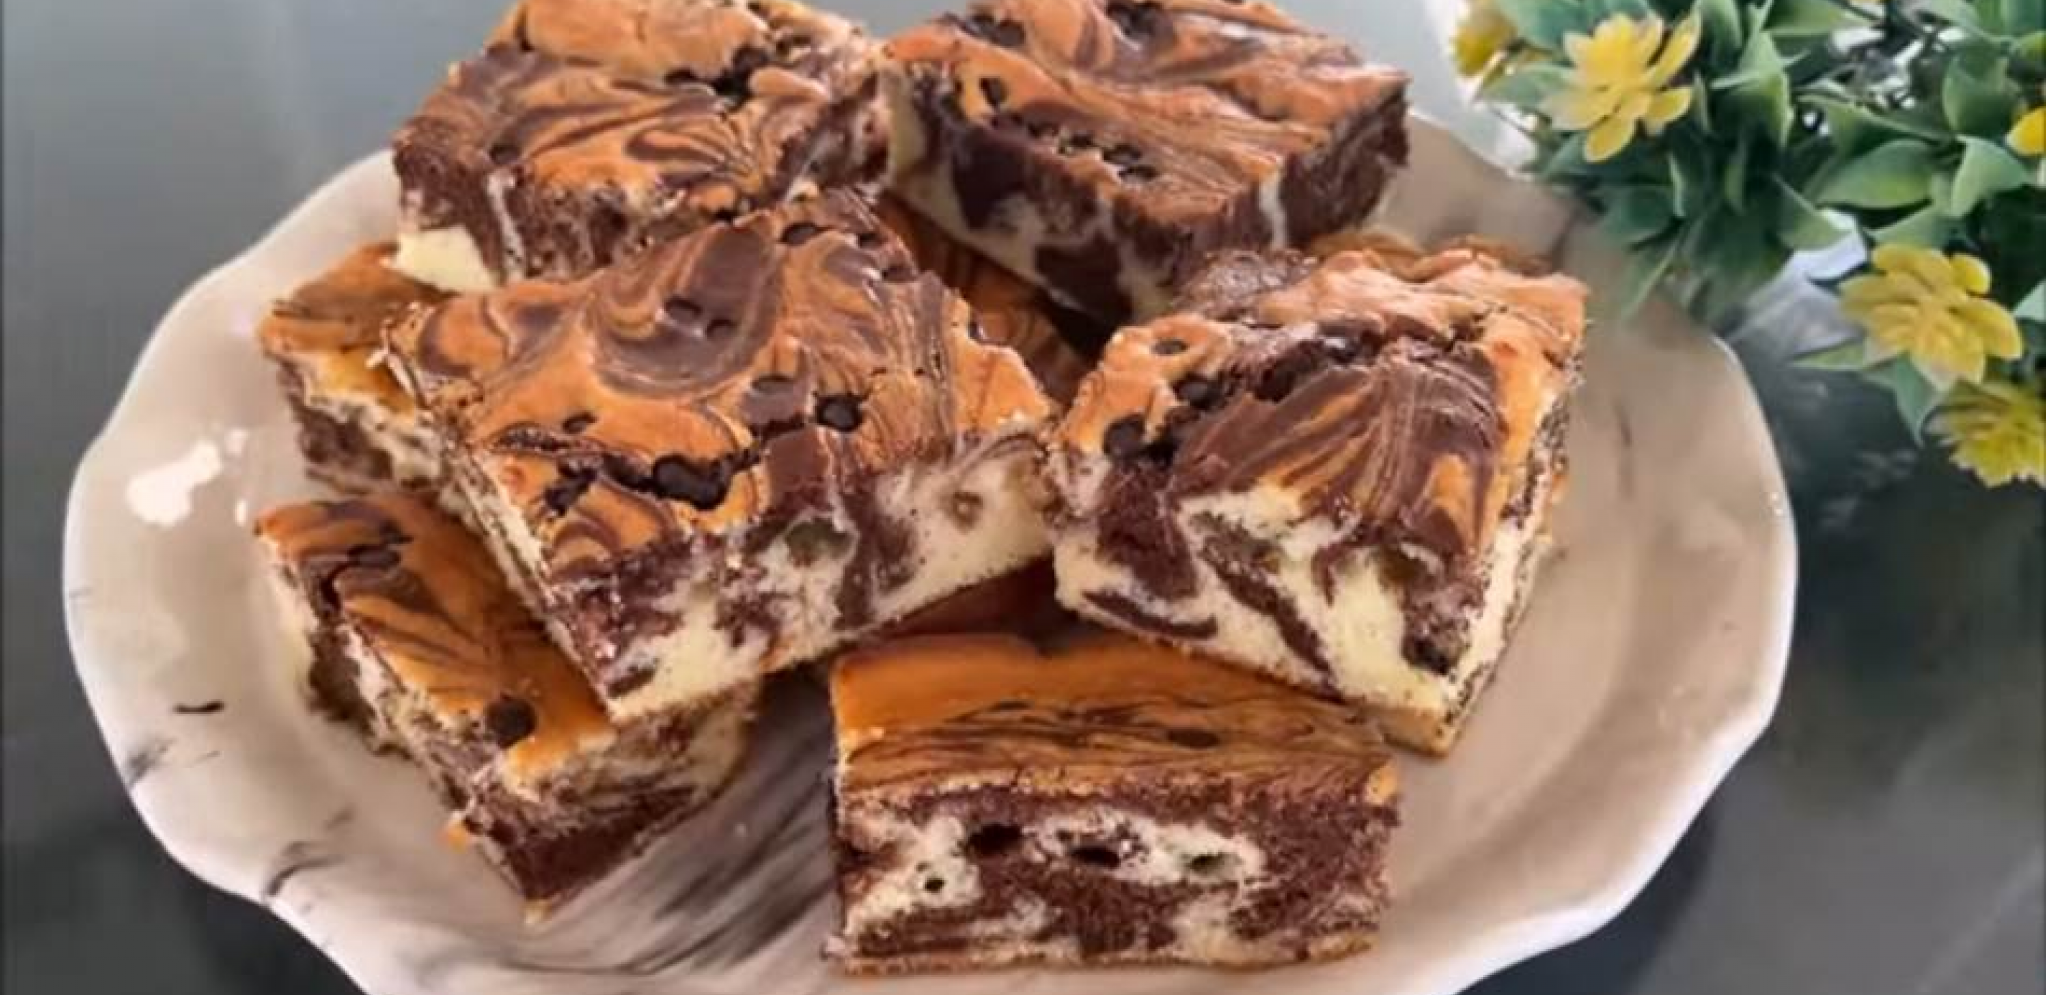 ZVEZDA SVAKE TRPEZE Fantastični mramorni kolač, prava harmonija ukusa (VIDEO)